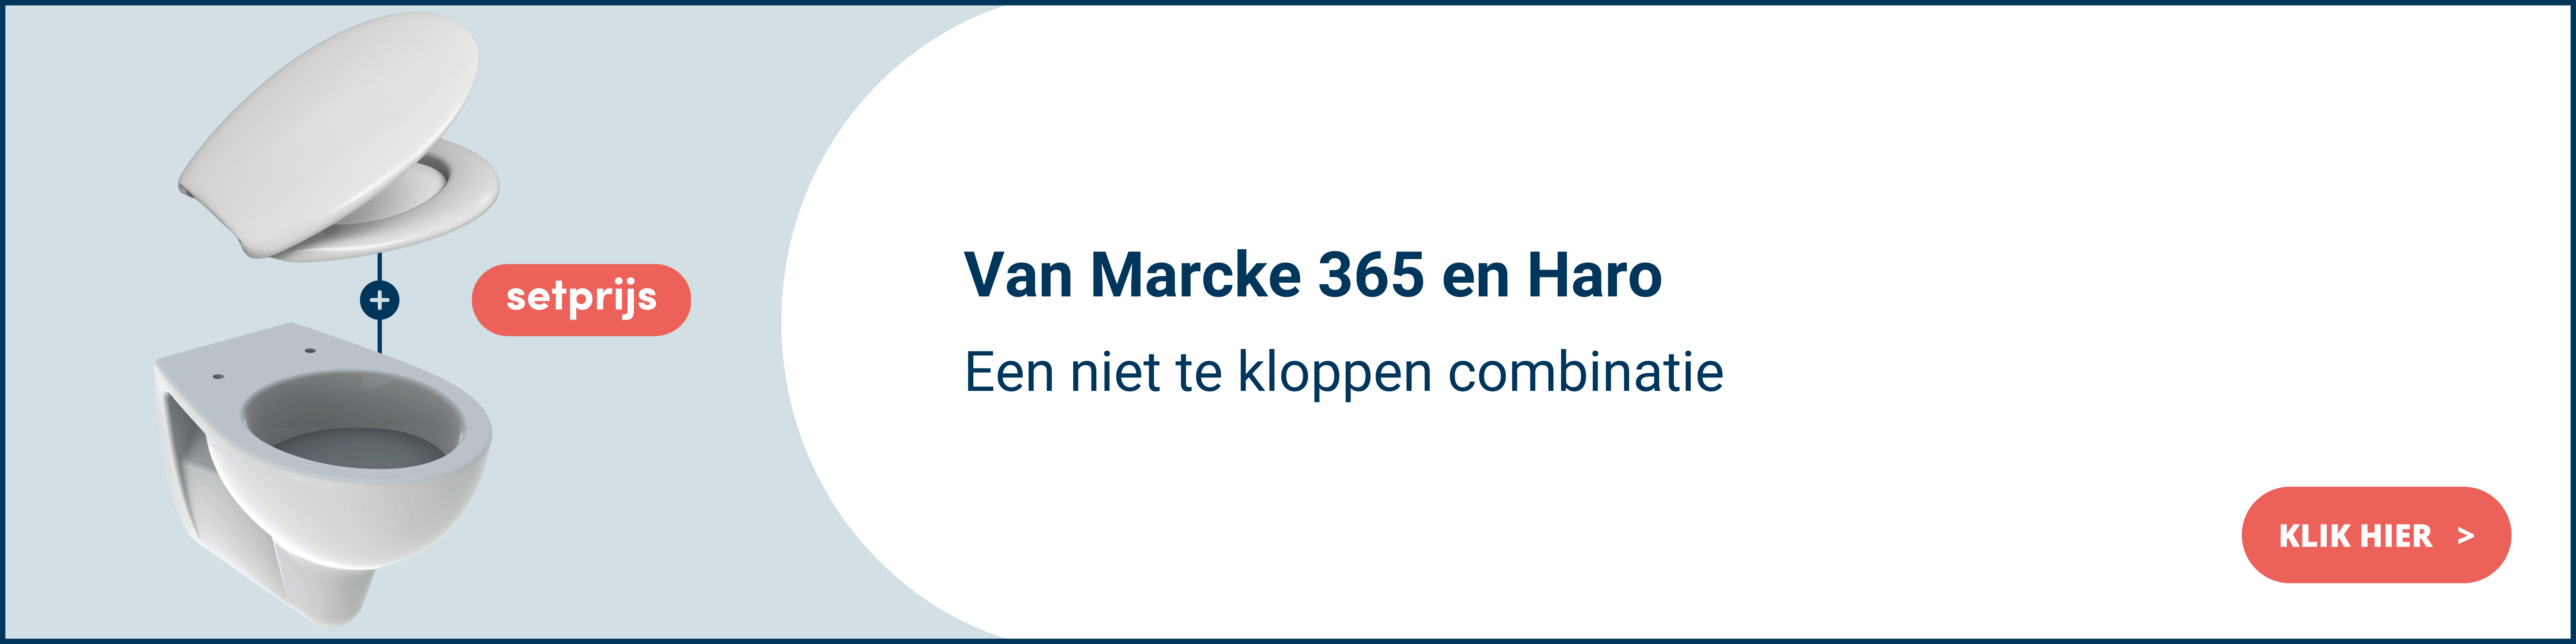 Toiletset VM 365 + Haro NL.png